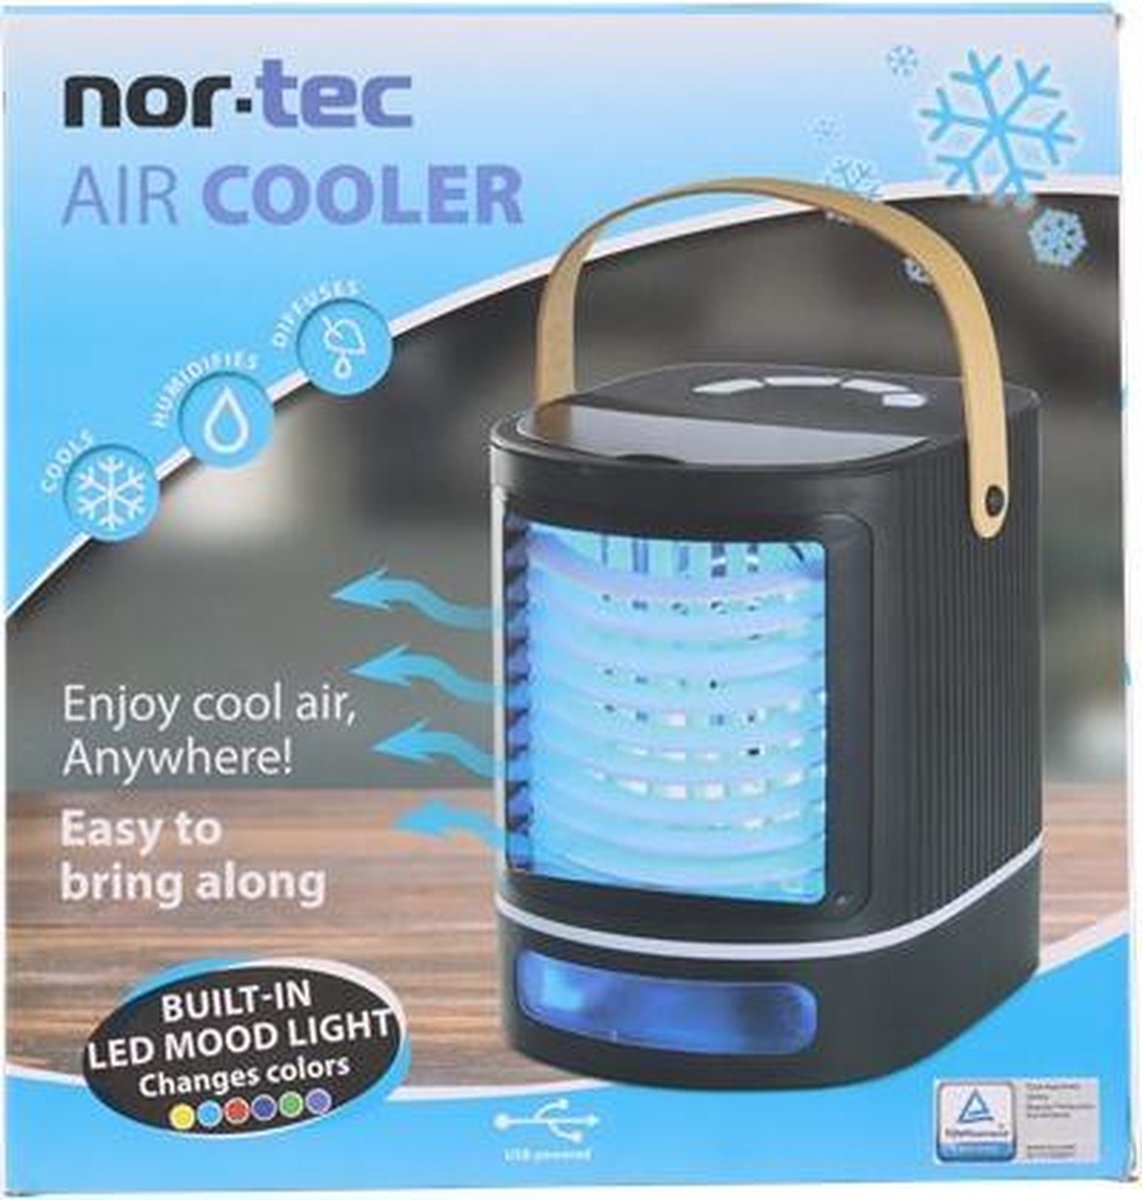 Nor-Tec AirCooler met Led-verlichting (6 kleuren) - Portable Luchtkoeler - Luchtbevochtiger - Diffuser - Koelen & Bevochten - Ventilator - 3 Snelheden - USB-aansluiting